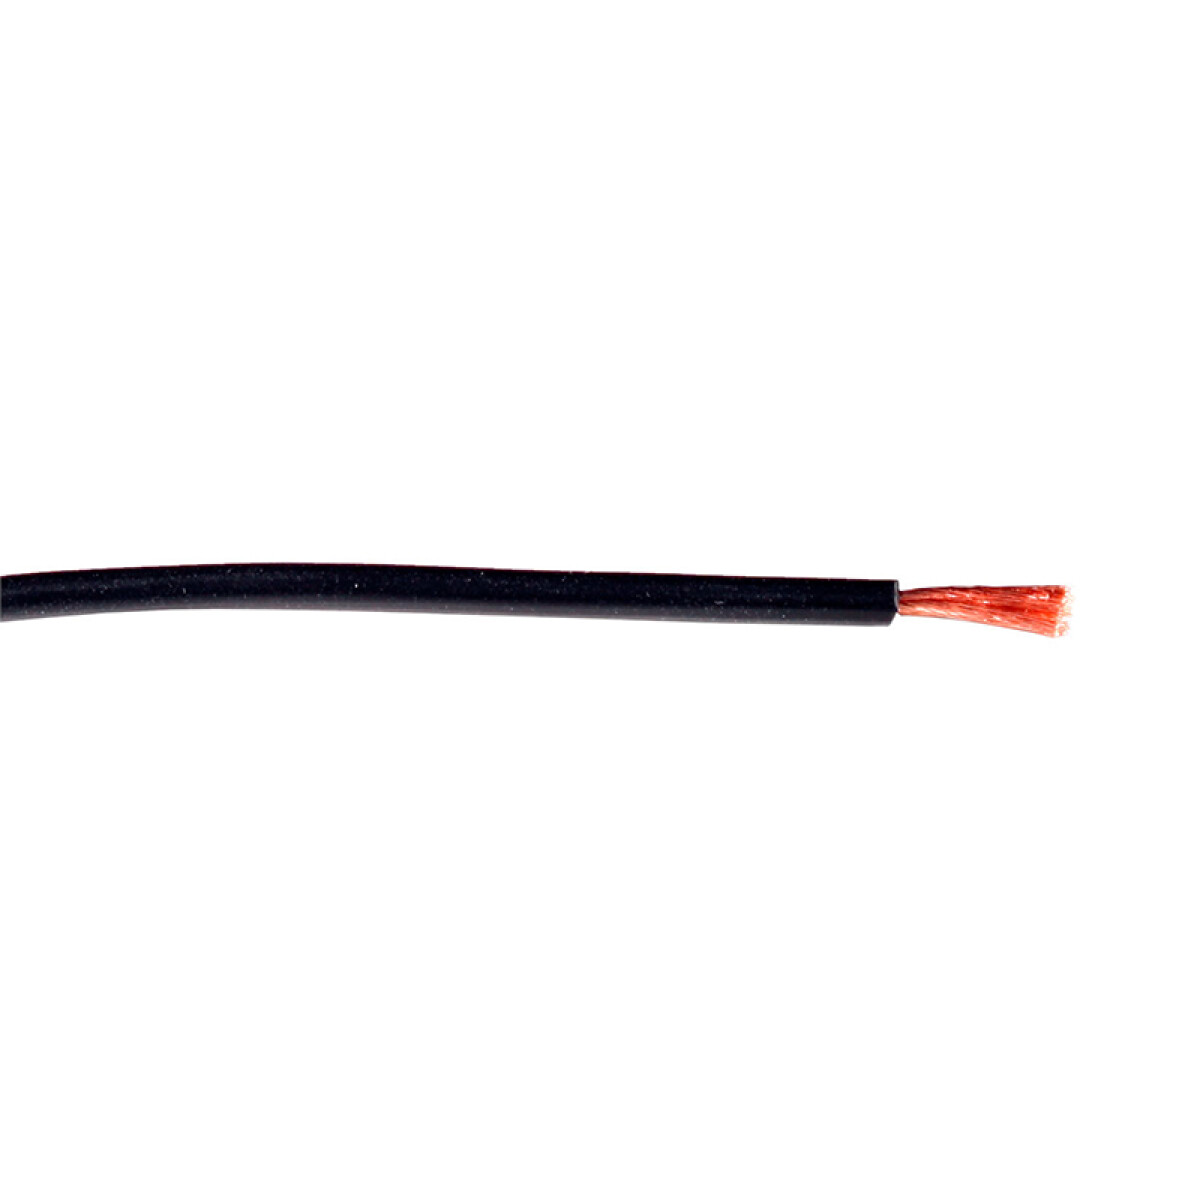 Cable de cobre flexible 3,00mm² negro -Rollo 100mt - C94343 